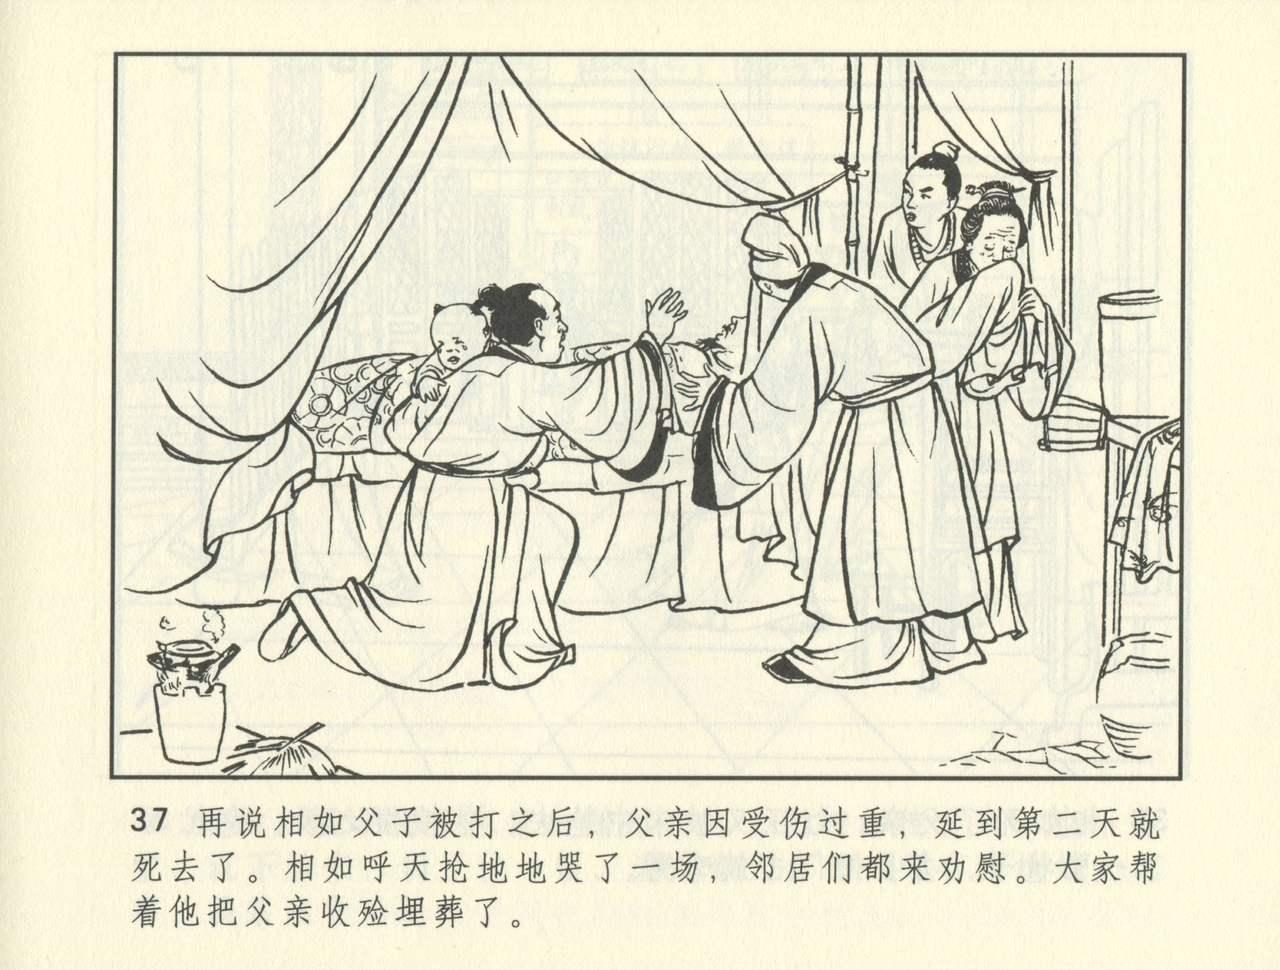 聊斋志异 张玮等绘 天津人民美术出版社 卷二十一 ~ 三十 377